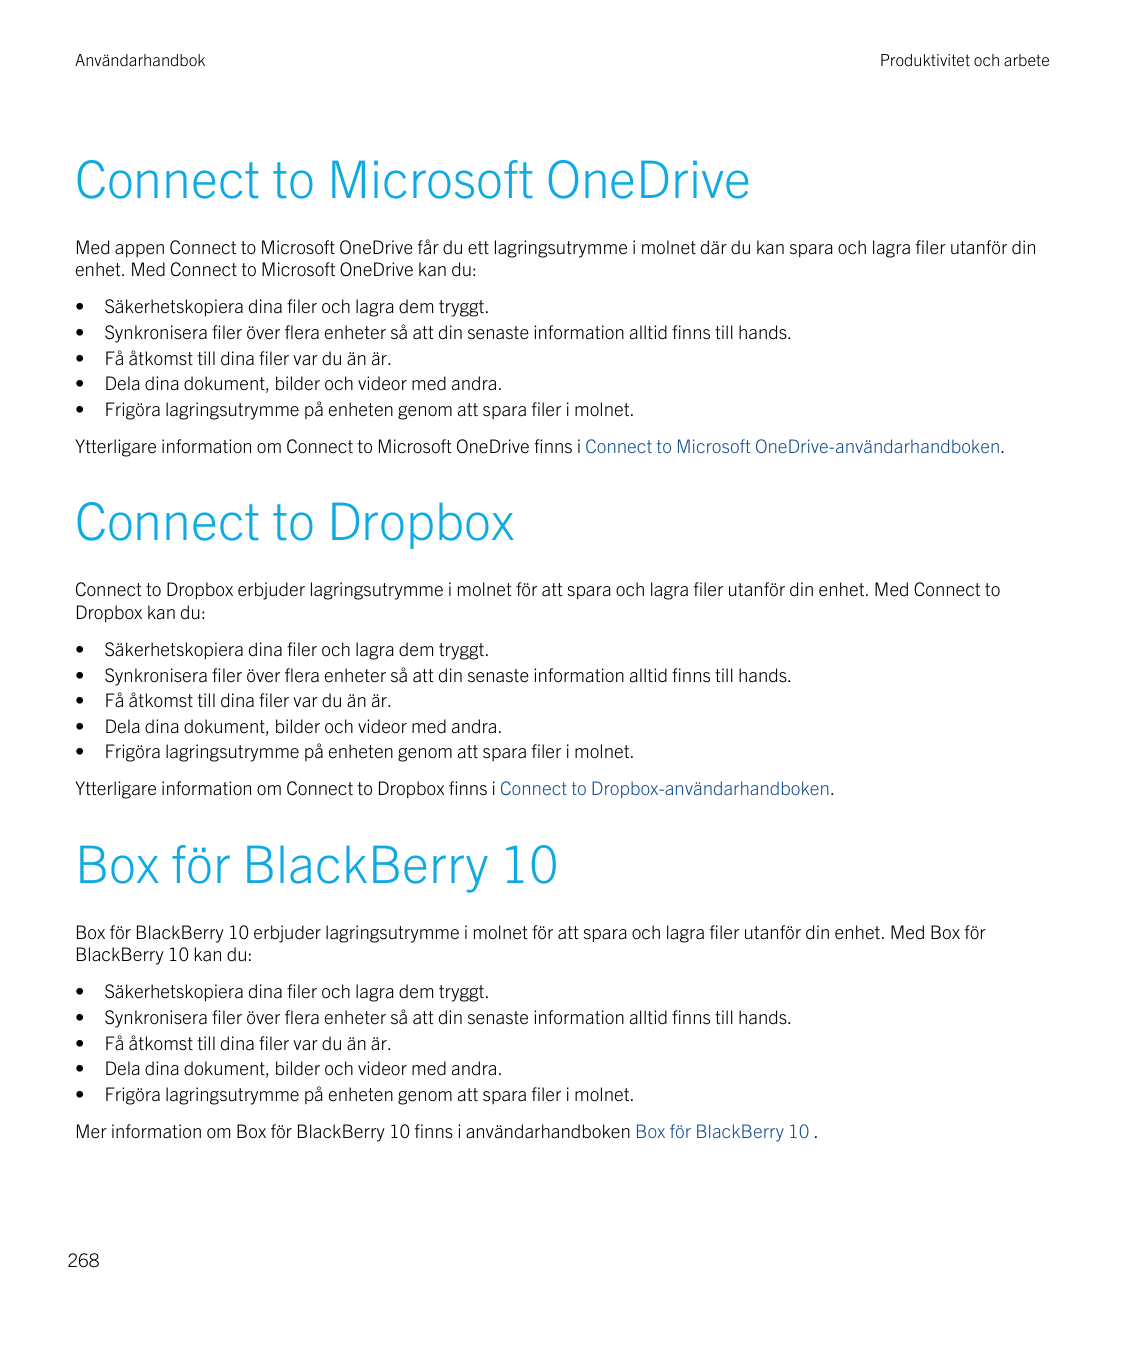 AnvändarhandbokProduktivitet och arbeteConnect to Microsoft OneDriveMed appen Connect to Microsoft OneDrive får du ett lagringsu